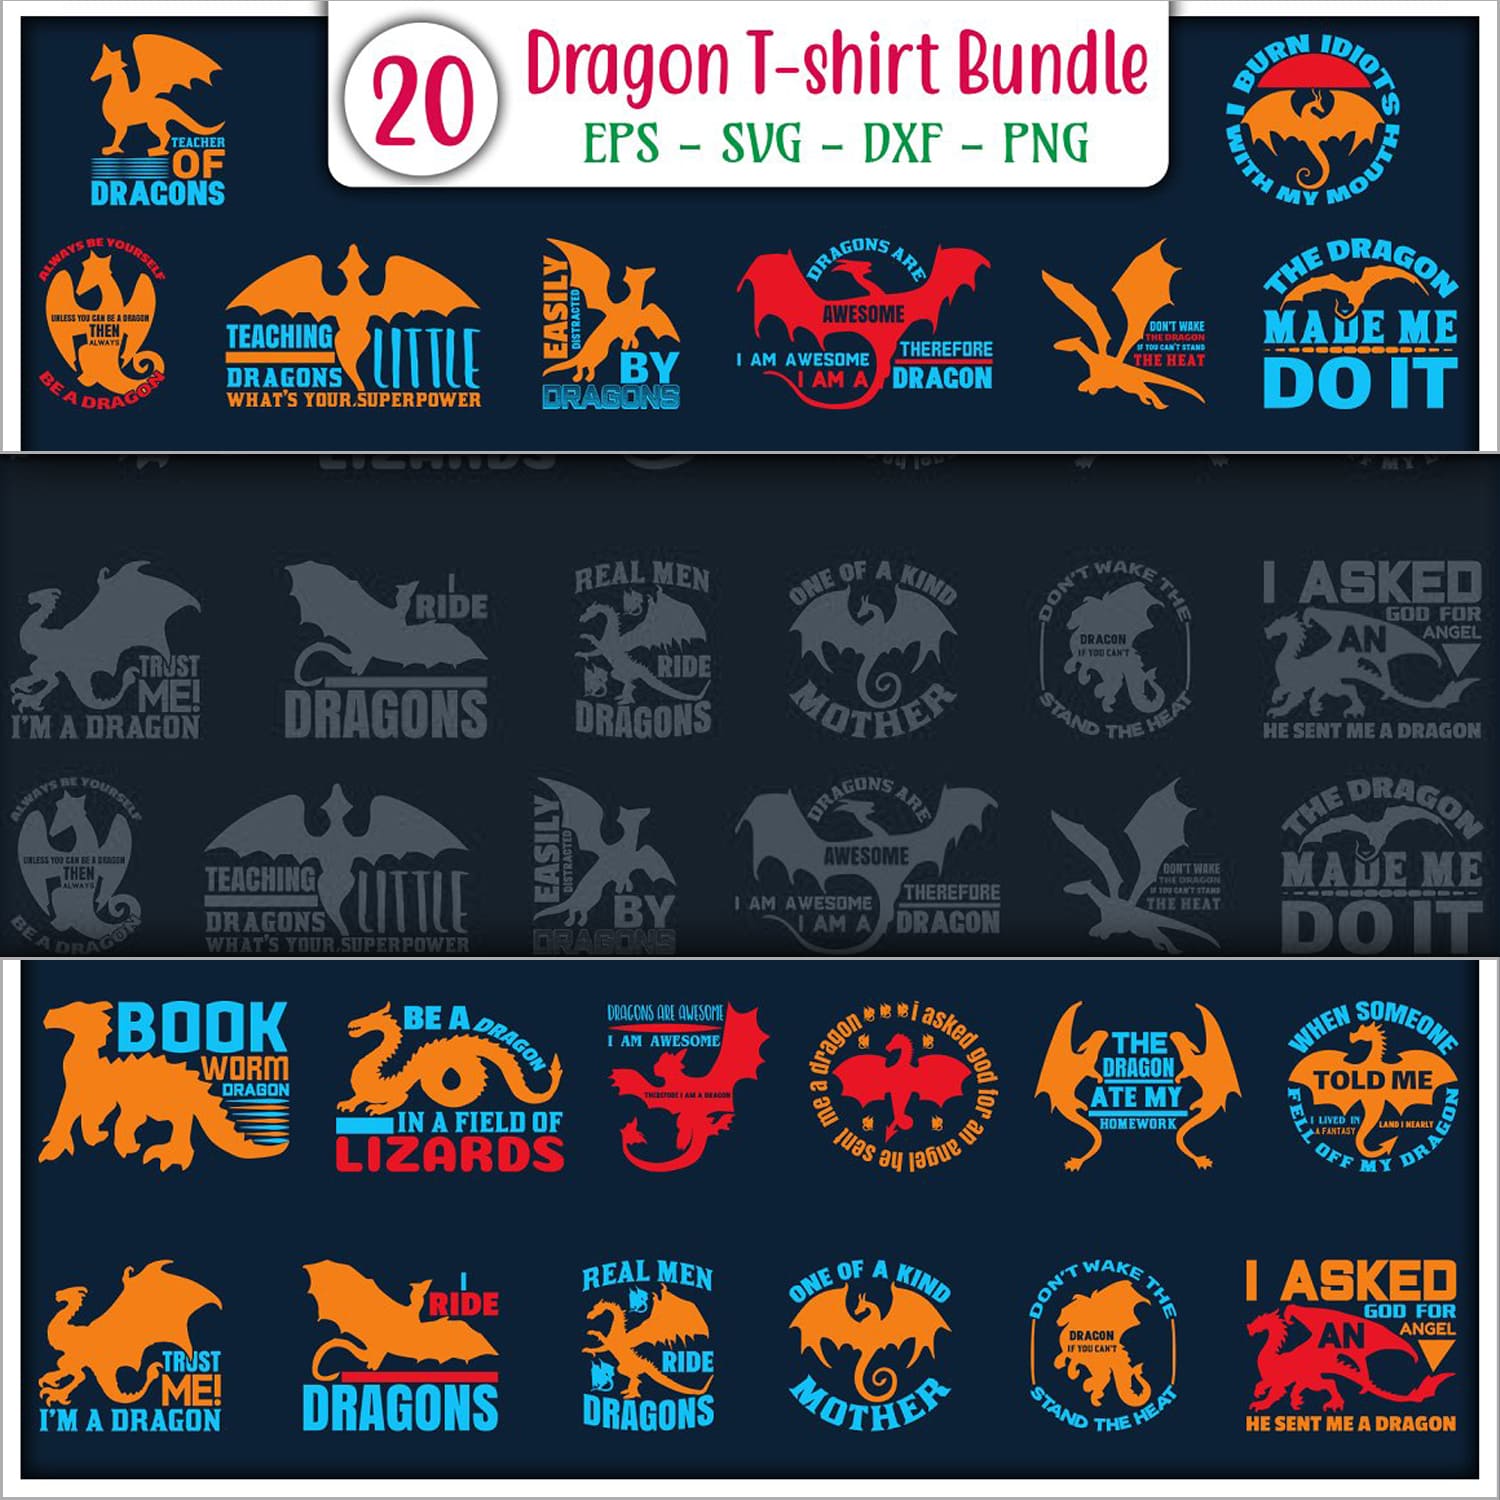 Dragon T-shirt Design Bundle Colorful Cover.